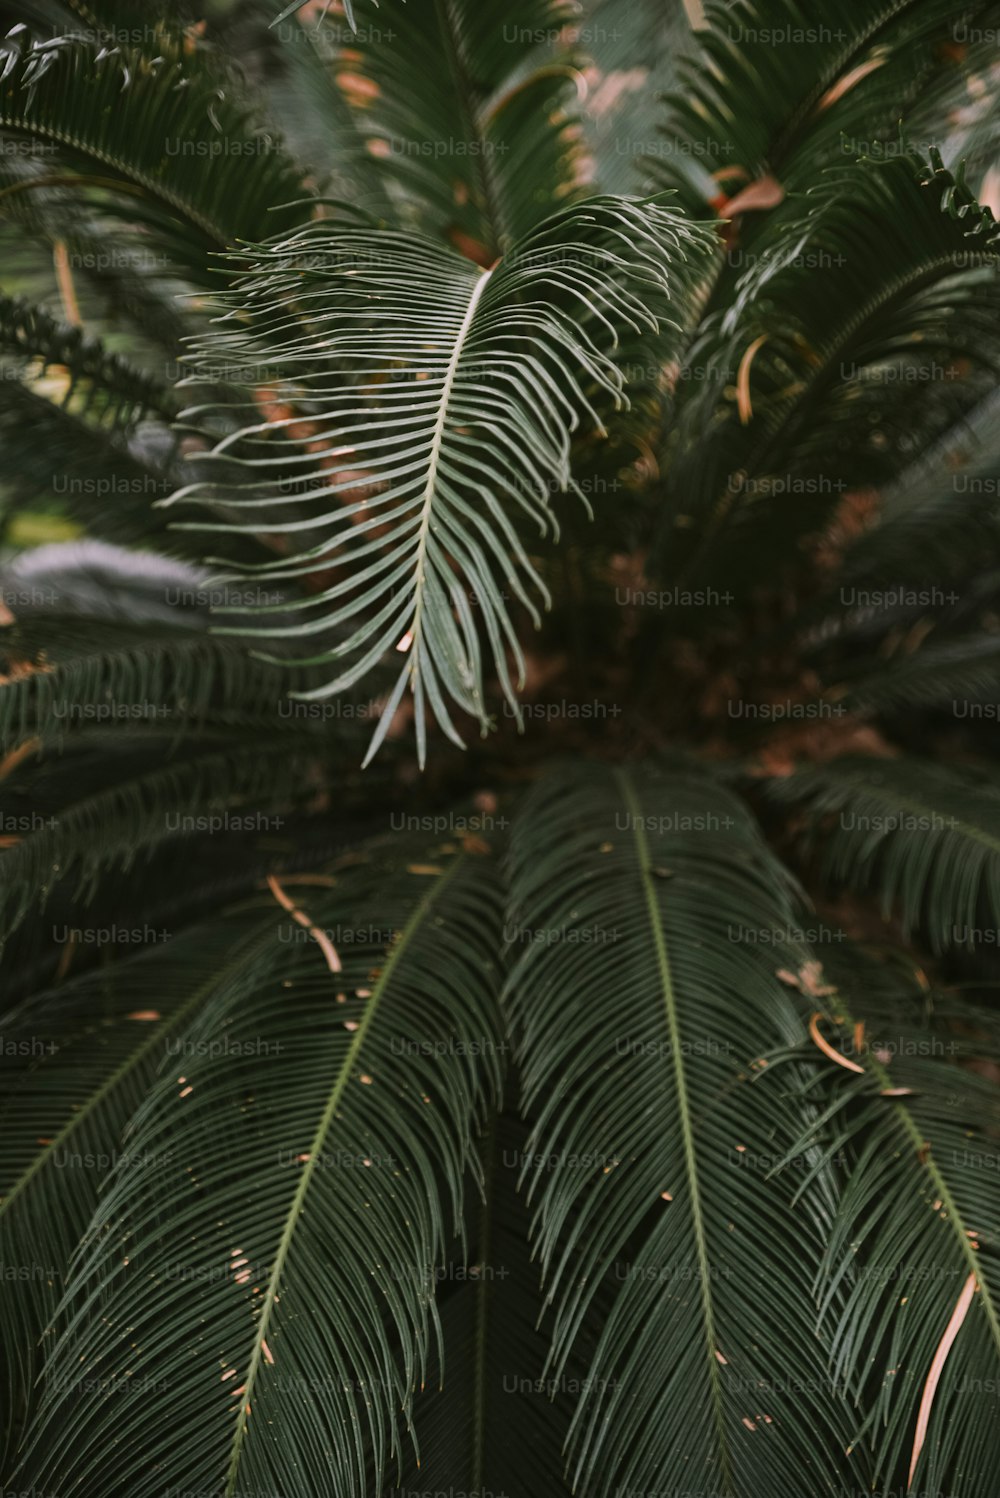 Un primer plano de una palmera con muchas hojas